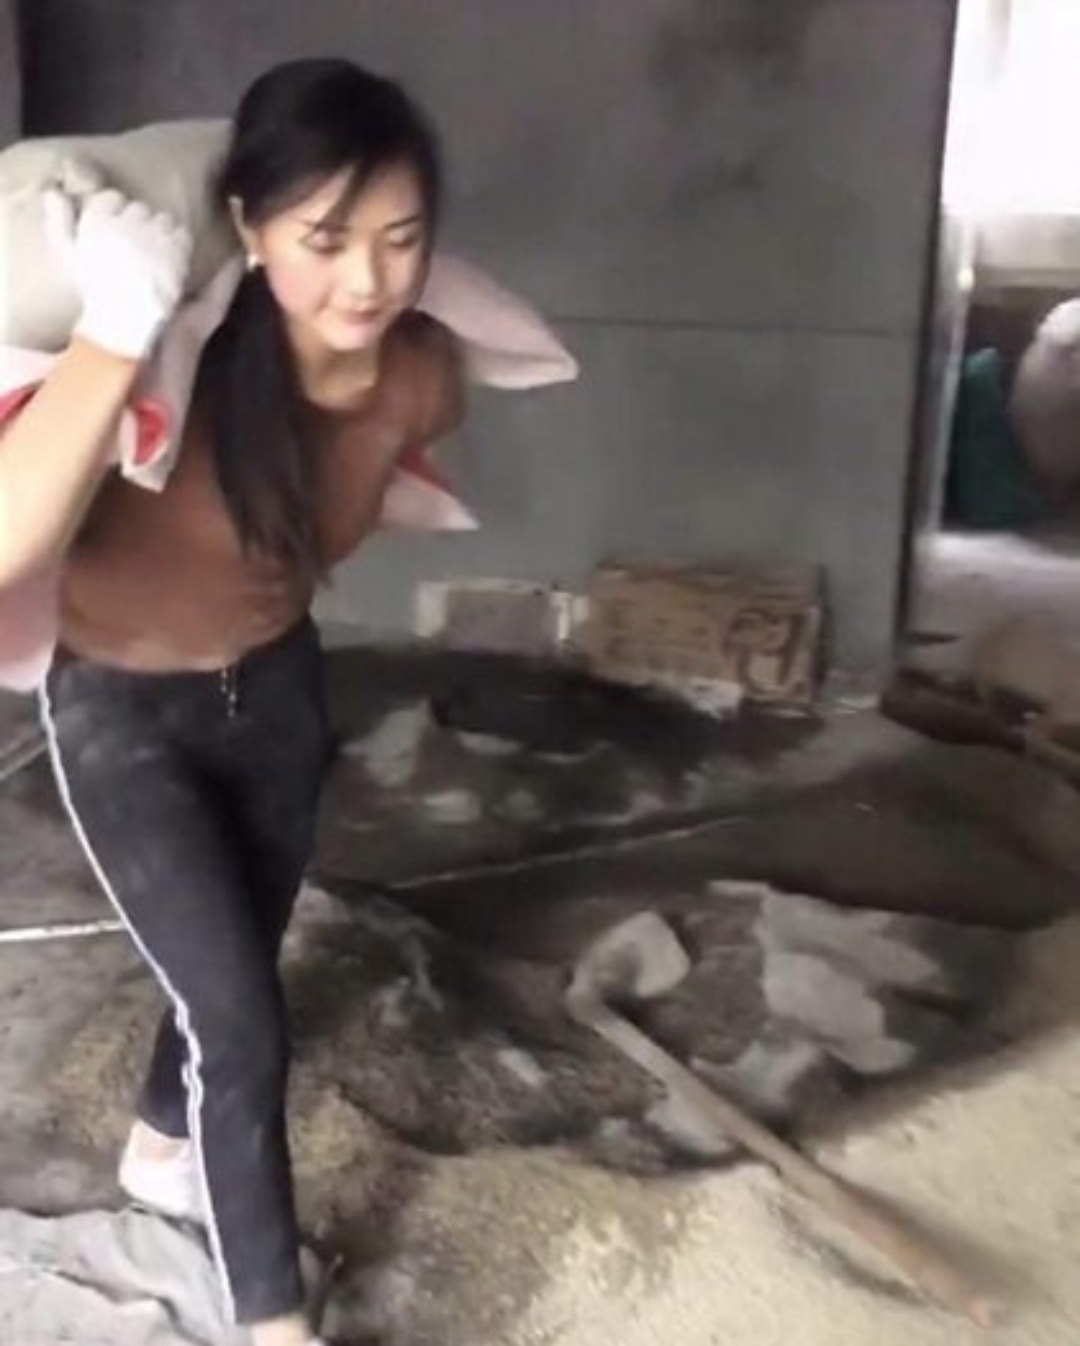 SAJAHEBOH.COM - Netizen Kagum Dengan Kemampuan Gadis Buat Kerja Buruh Ini Walaupun Badannya Kecil, Ramai Yang Terpukau!